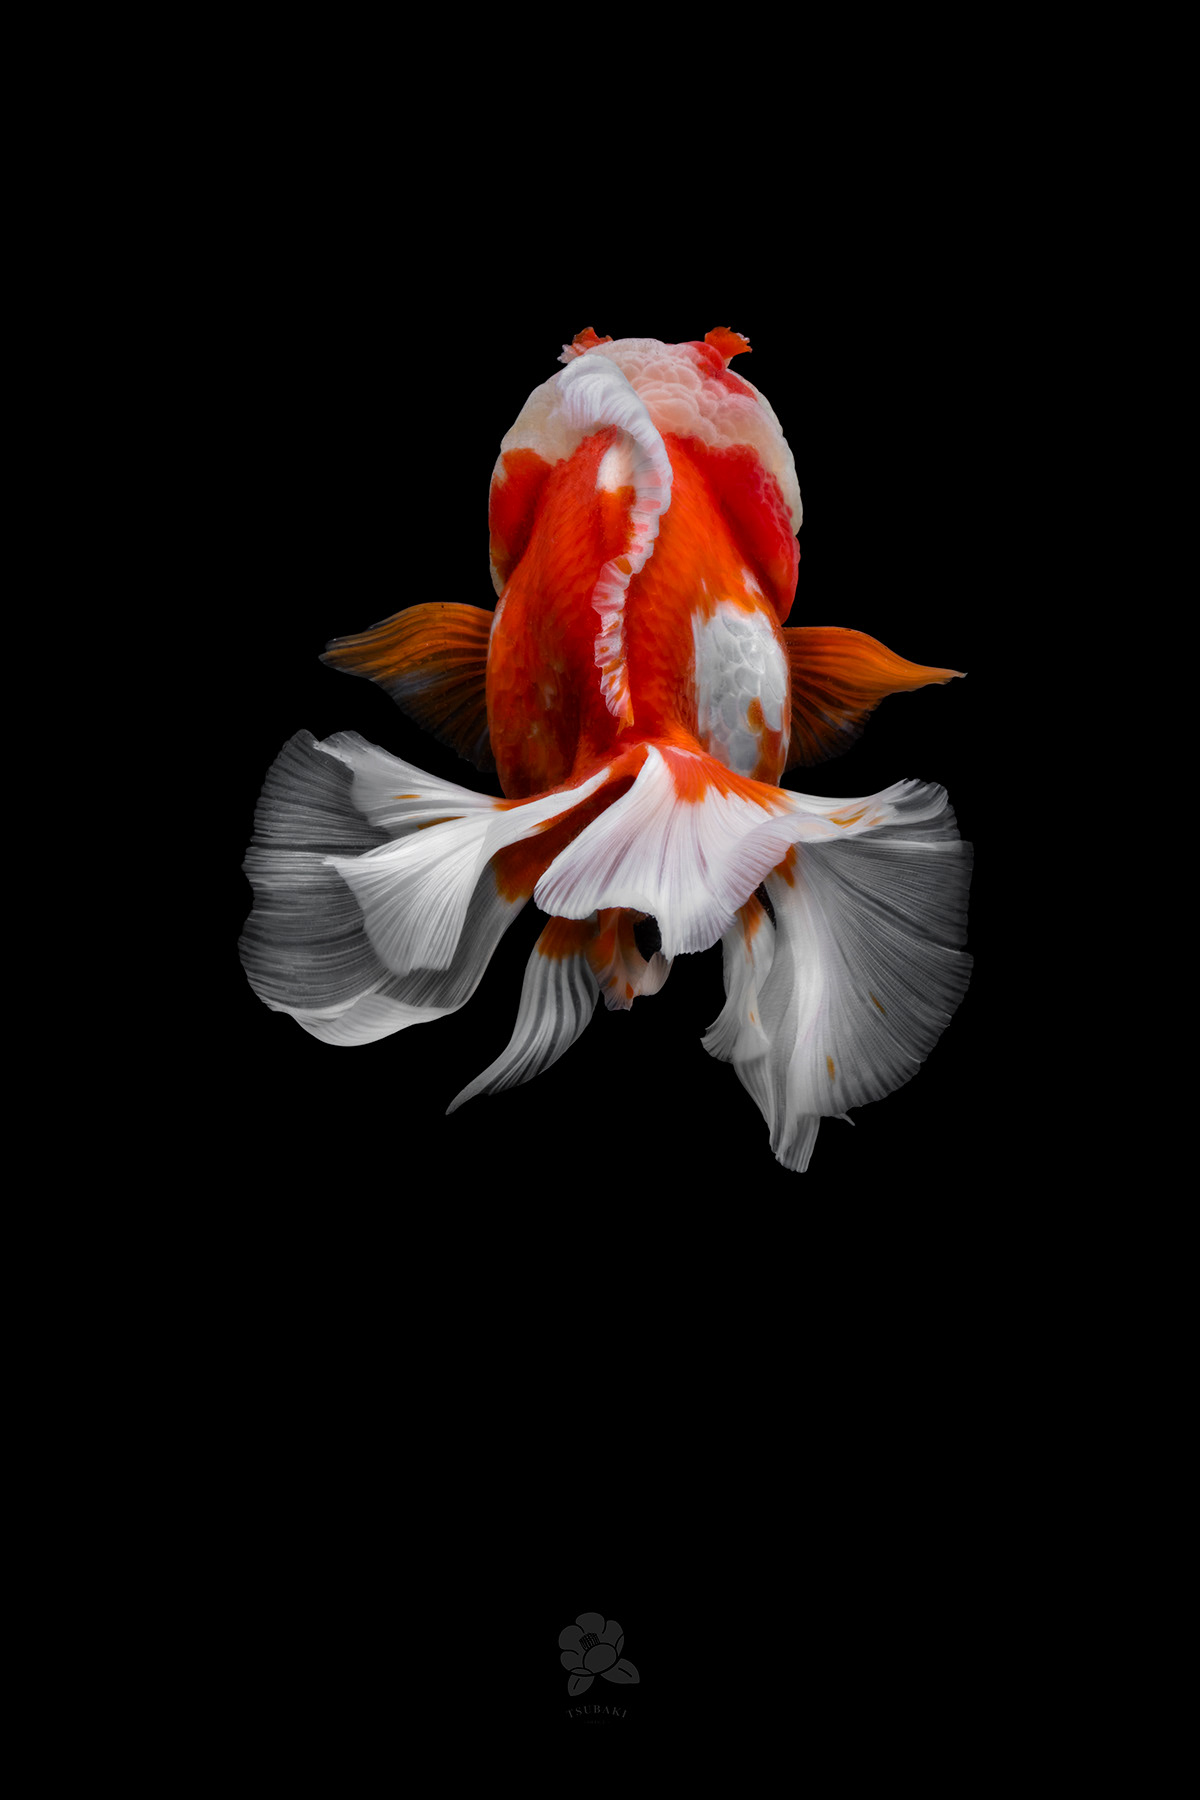 土佐 gold goldfish fish 金魚 Photography  lionhead 獅頭 color rad